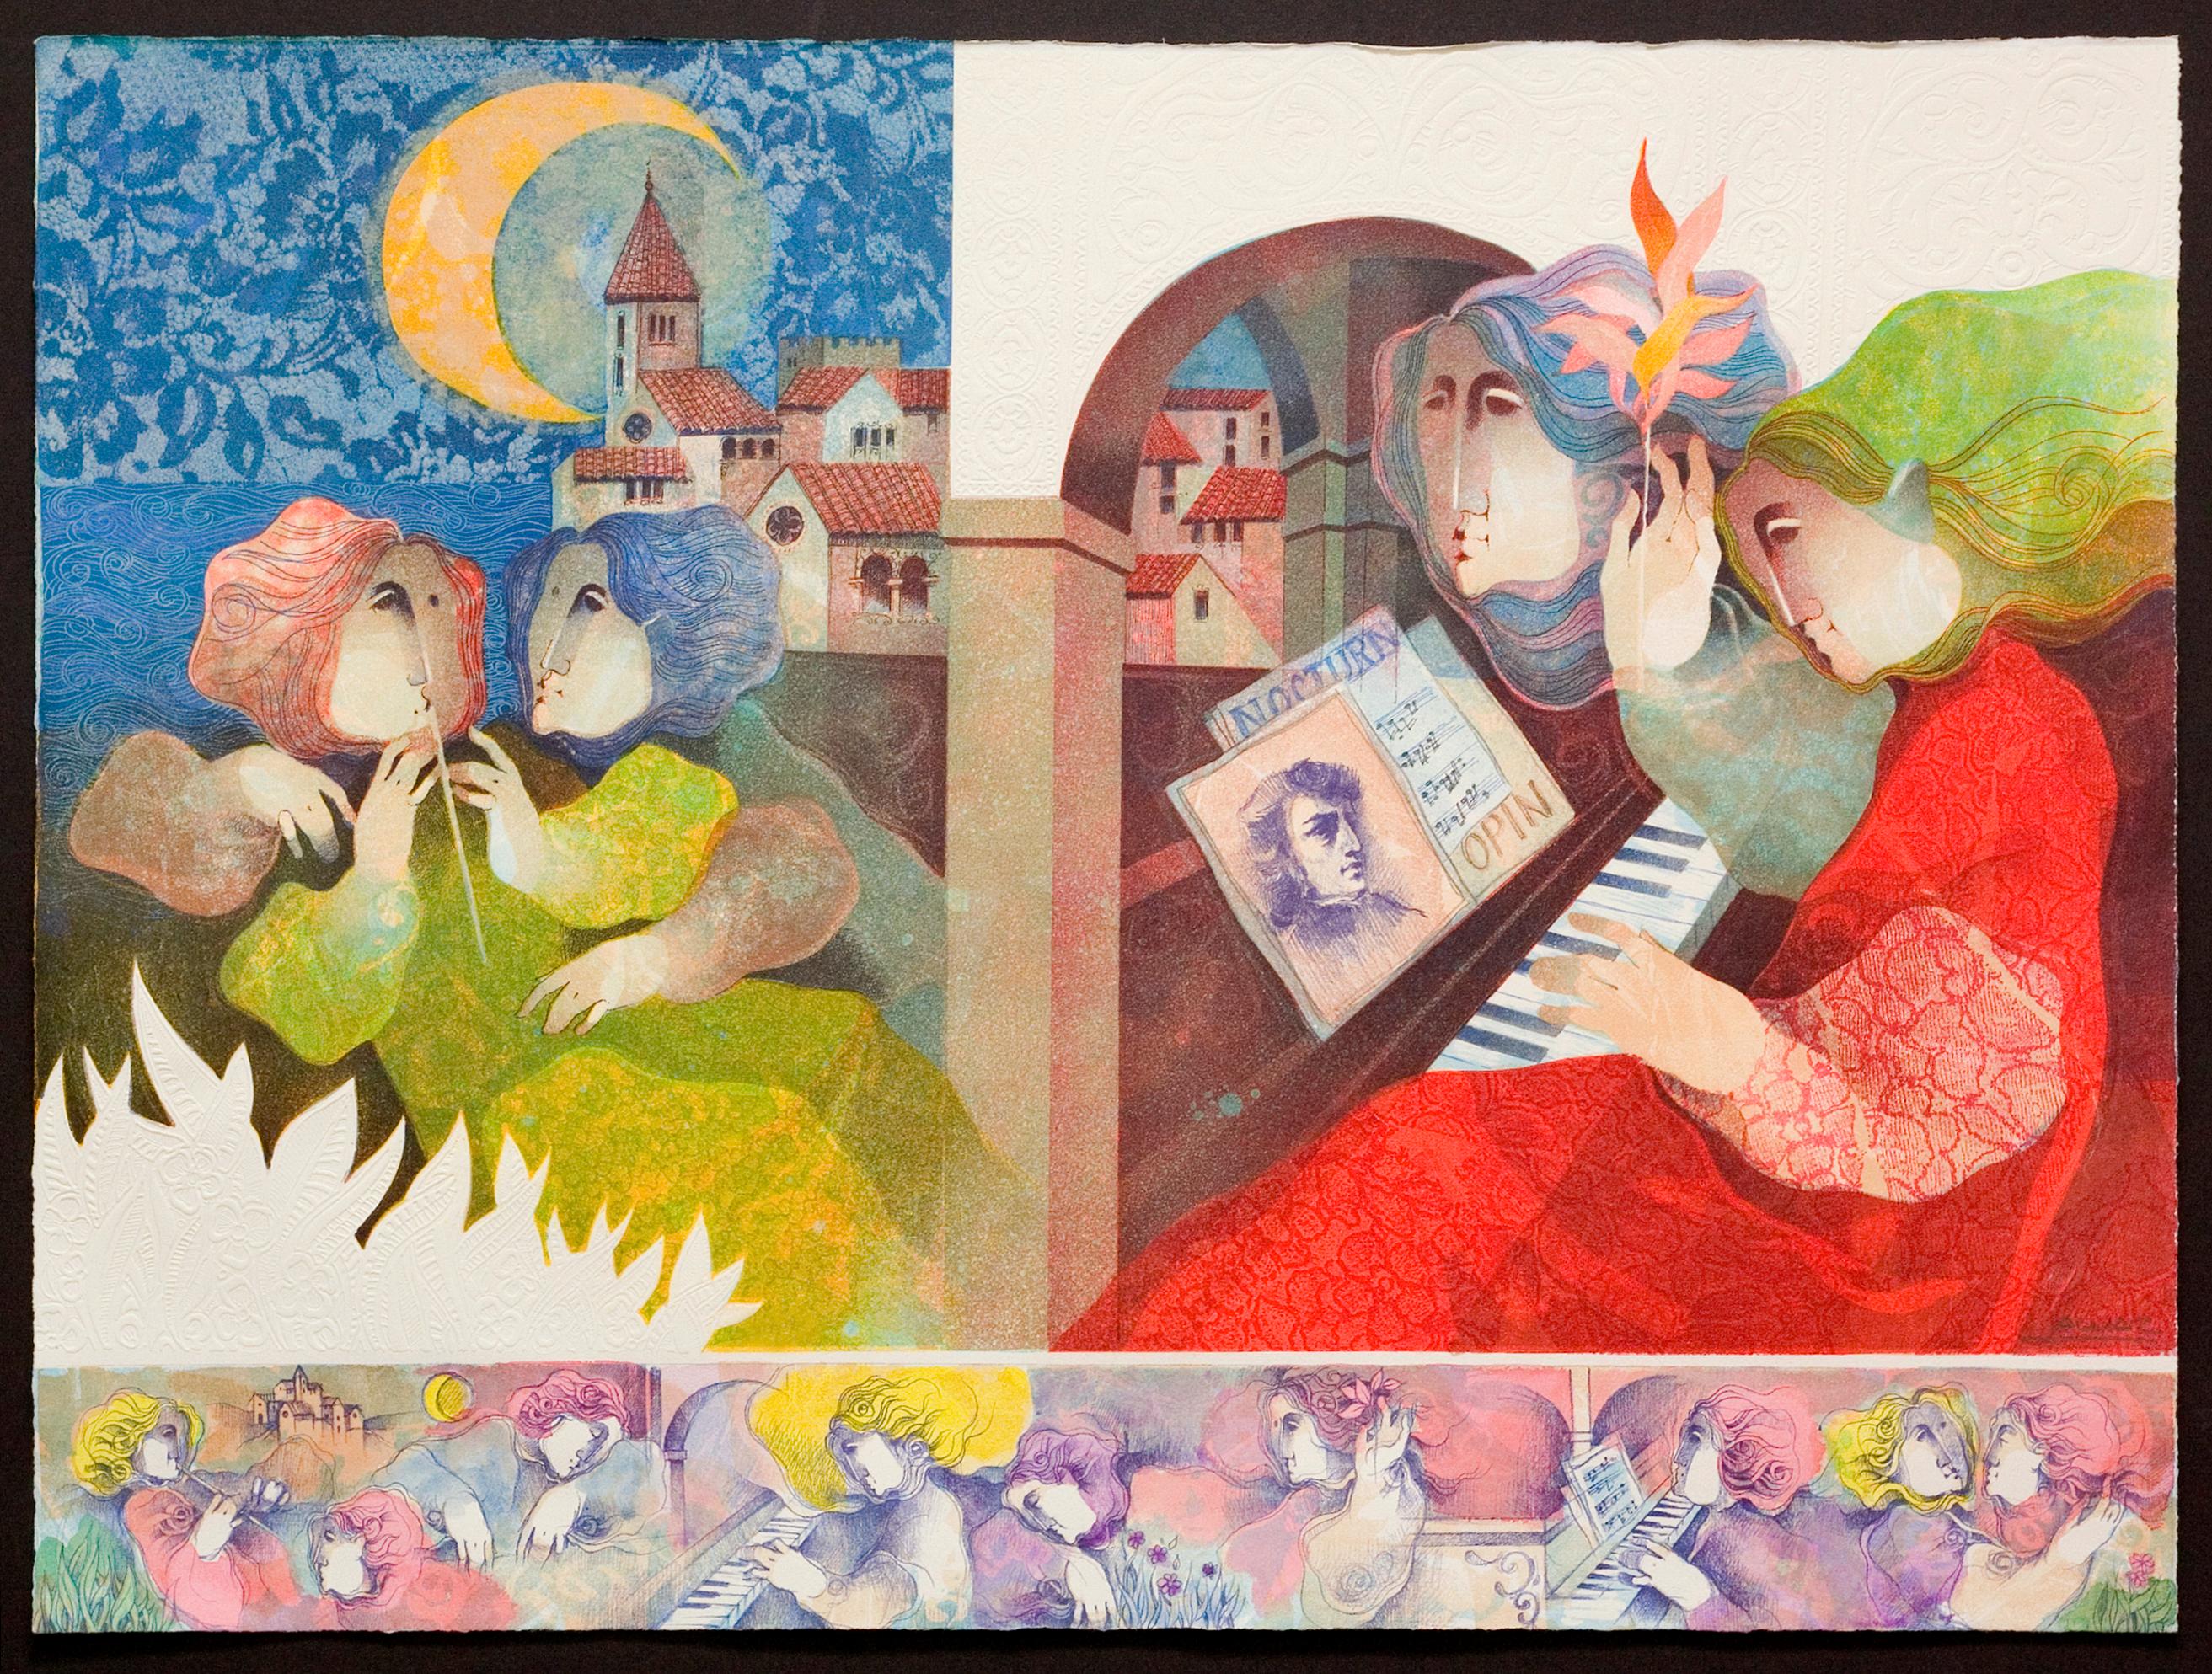 Alvar Sunol Munoz-Ramos Figurative Print - "Concierto de Noche"  (Concert of the Night)